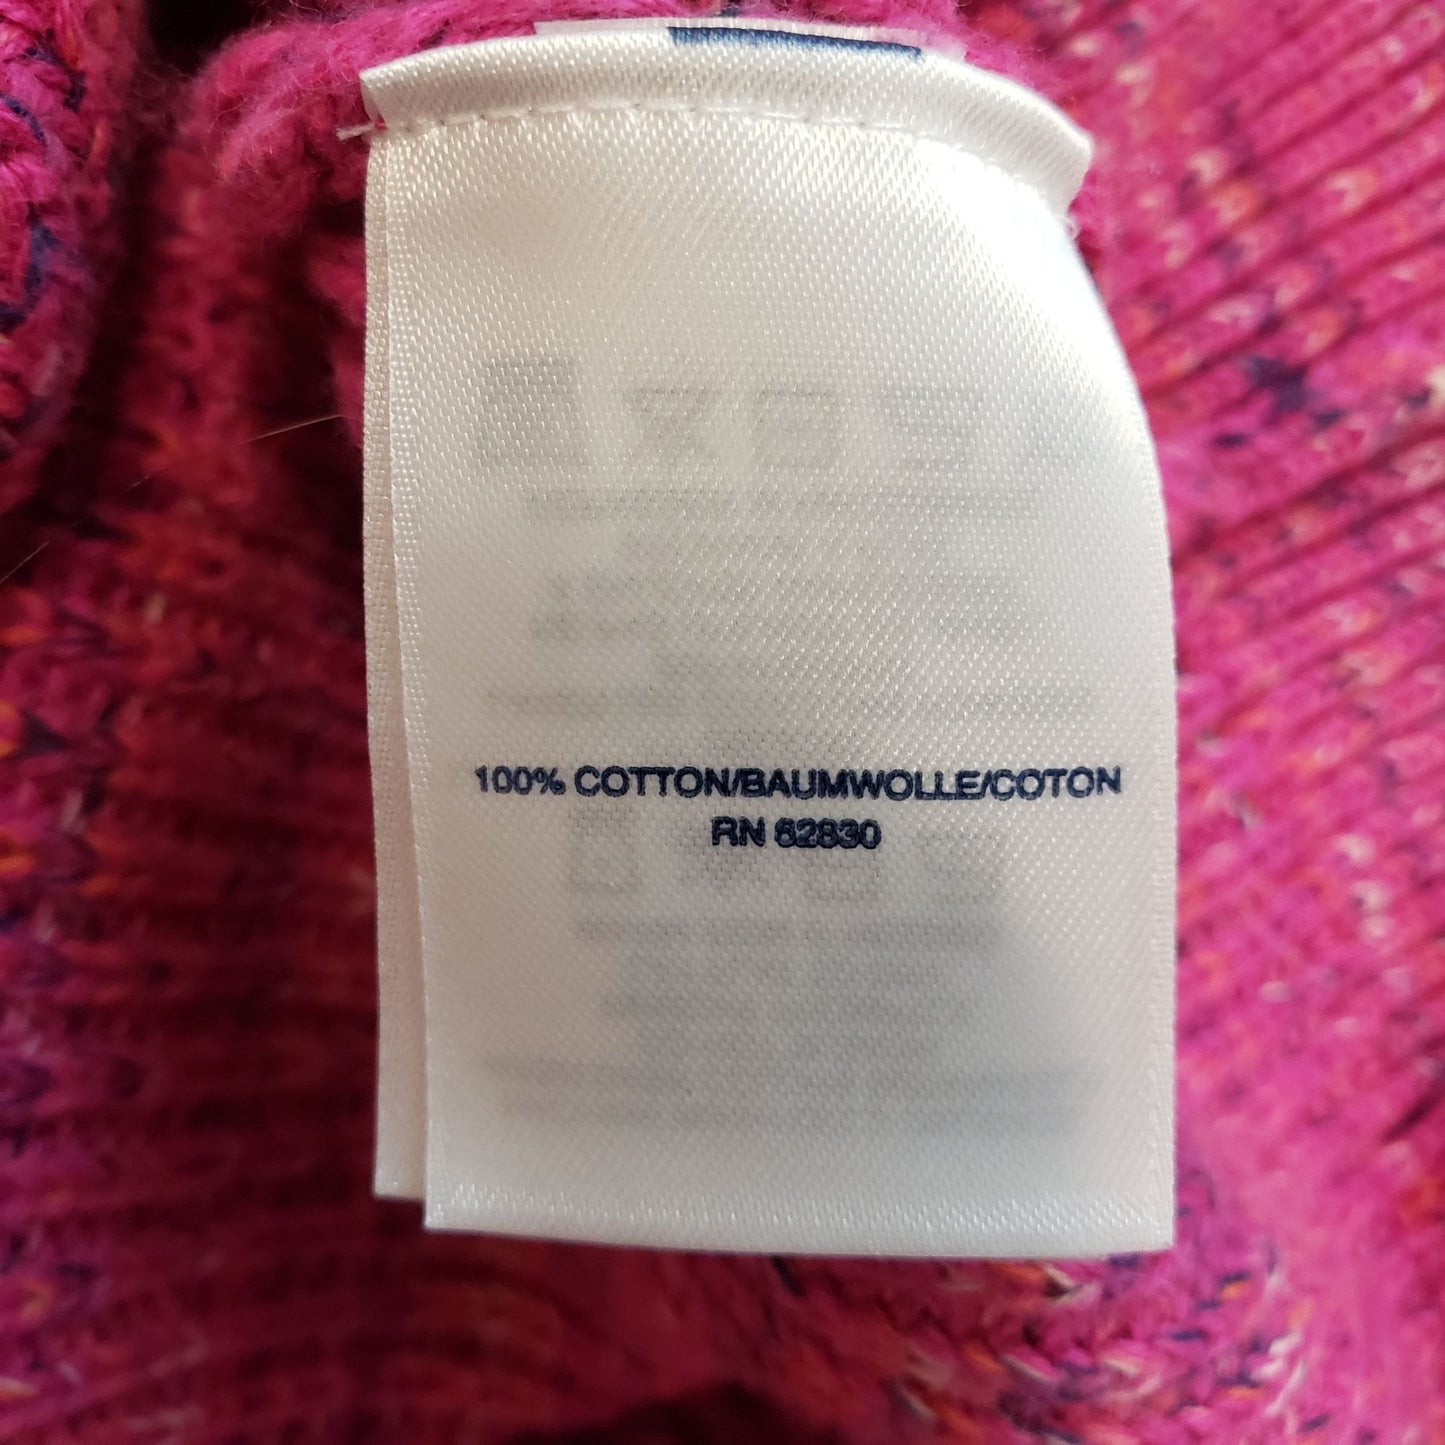 Lands' End Drifter Confetti Print Quarter Zip Sweater Size Medium